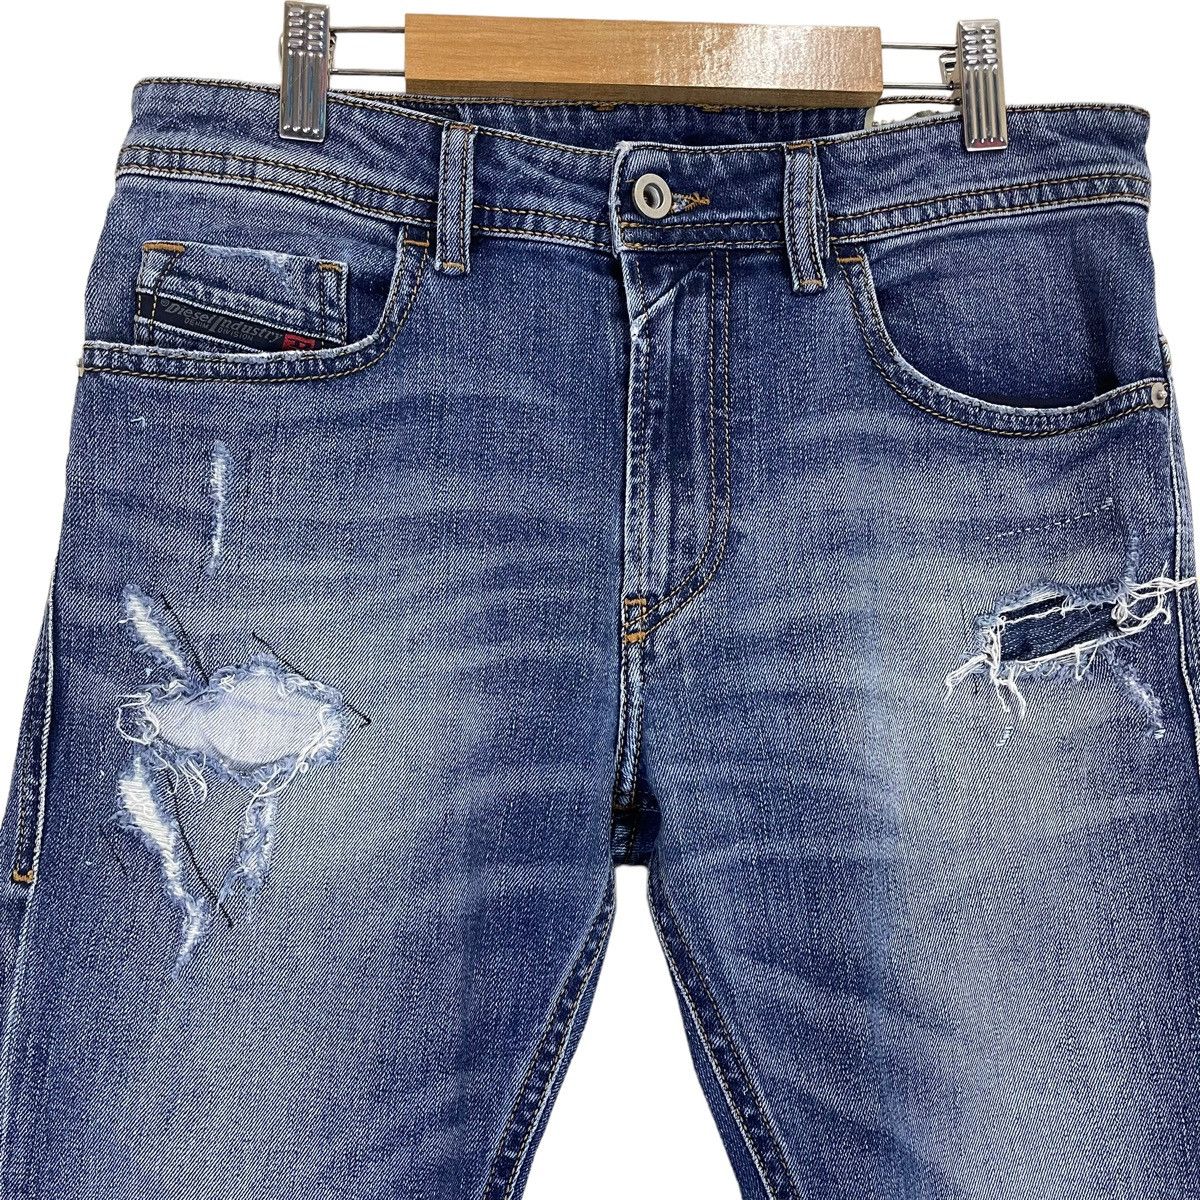 Diesel Industry Thommer Slim Skinny Distressed Jeans - 3